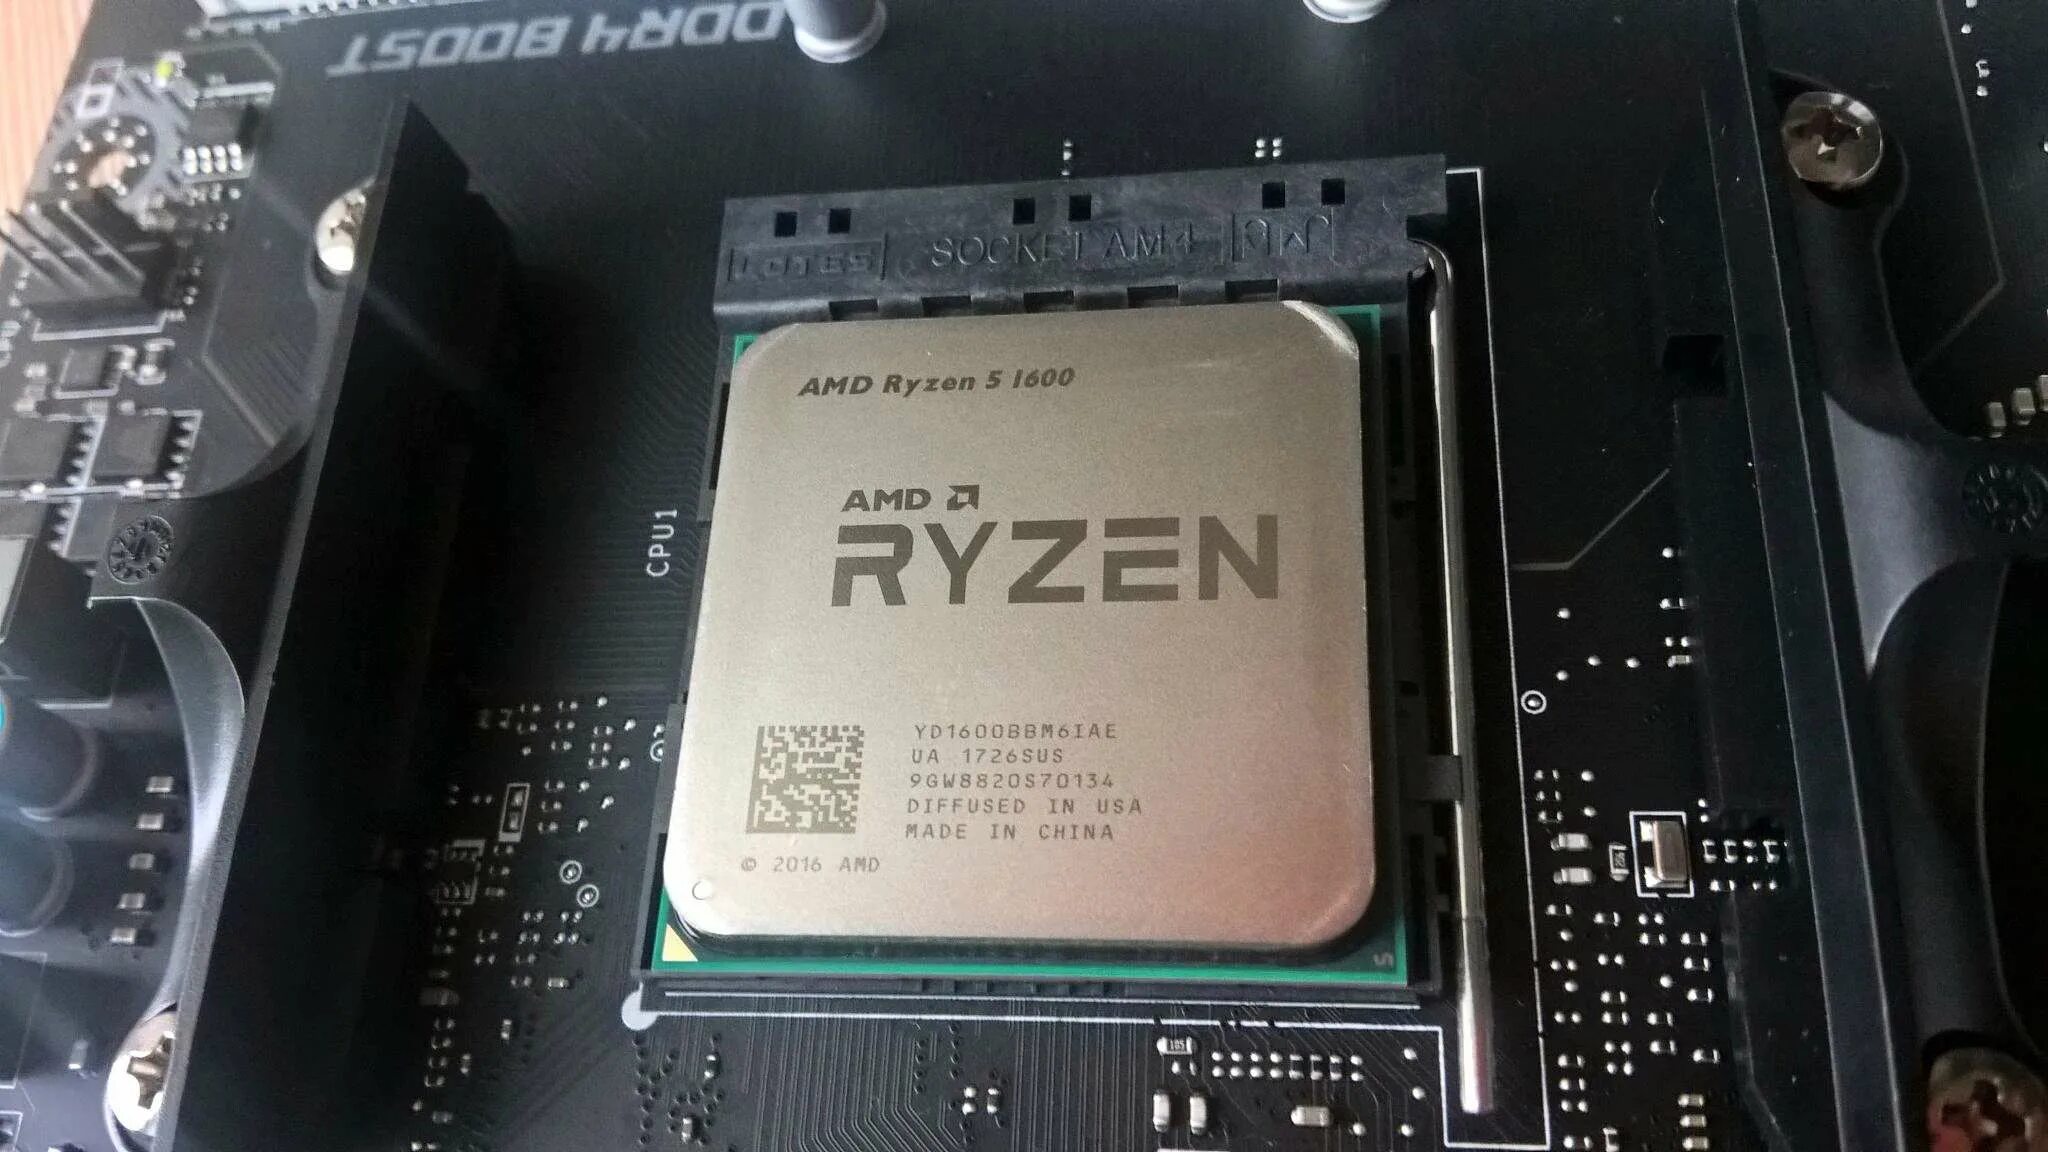 5 1600 купить. АМД райзен 5 1600. AMD Ryzen 5 1600 OEM. Процессор Ryazan 5 1600. AMD Ryzen 5 1600 (Box).